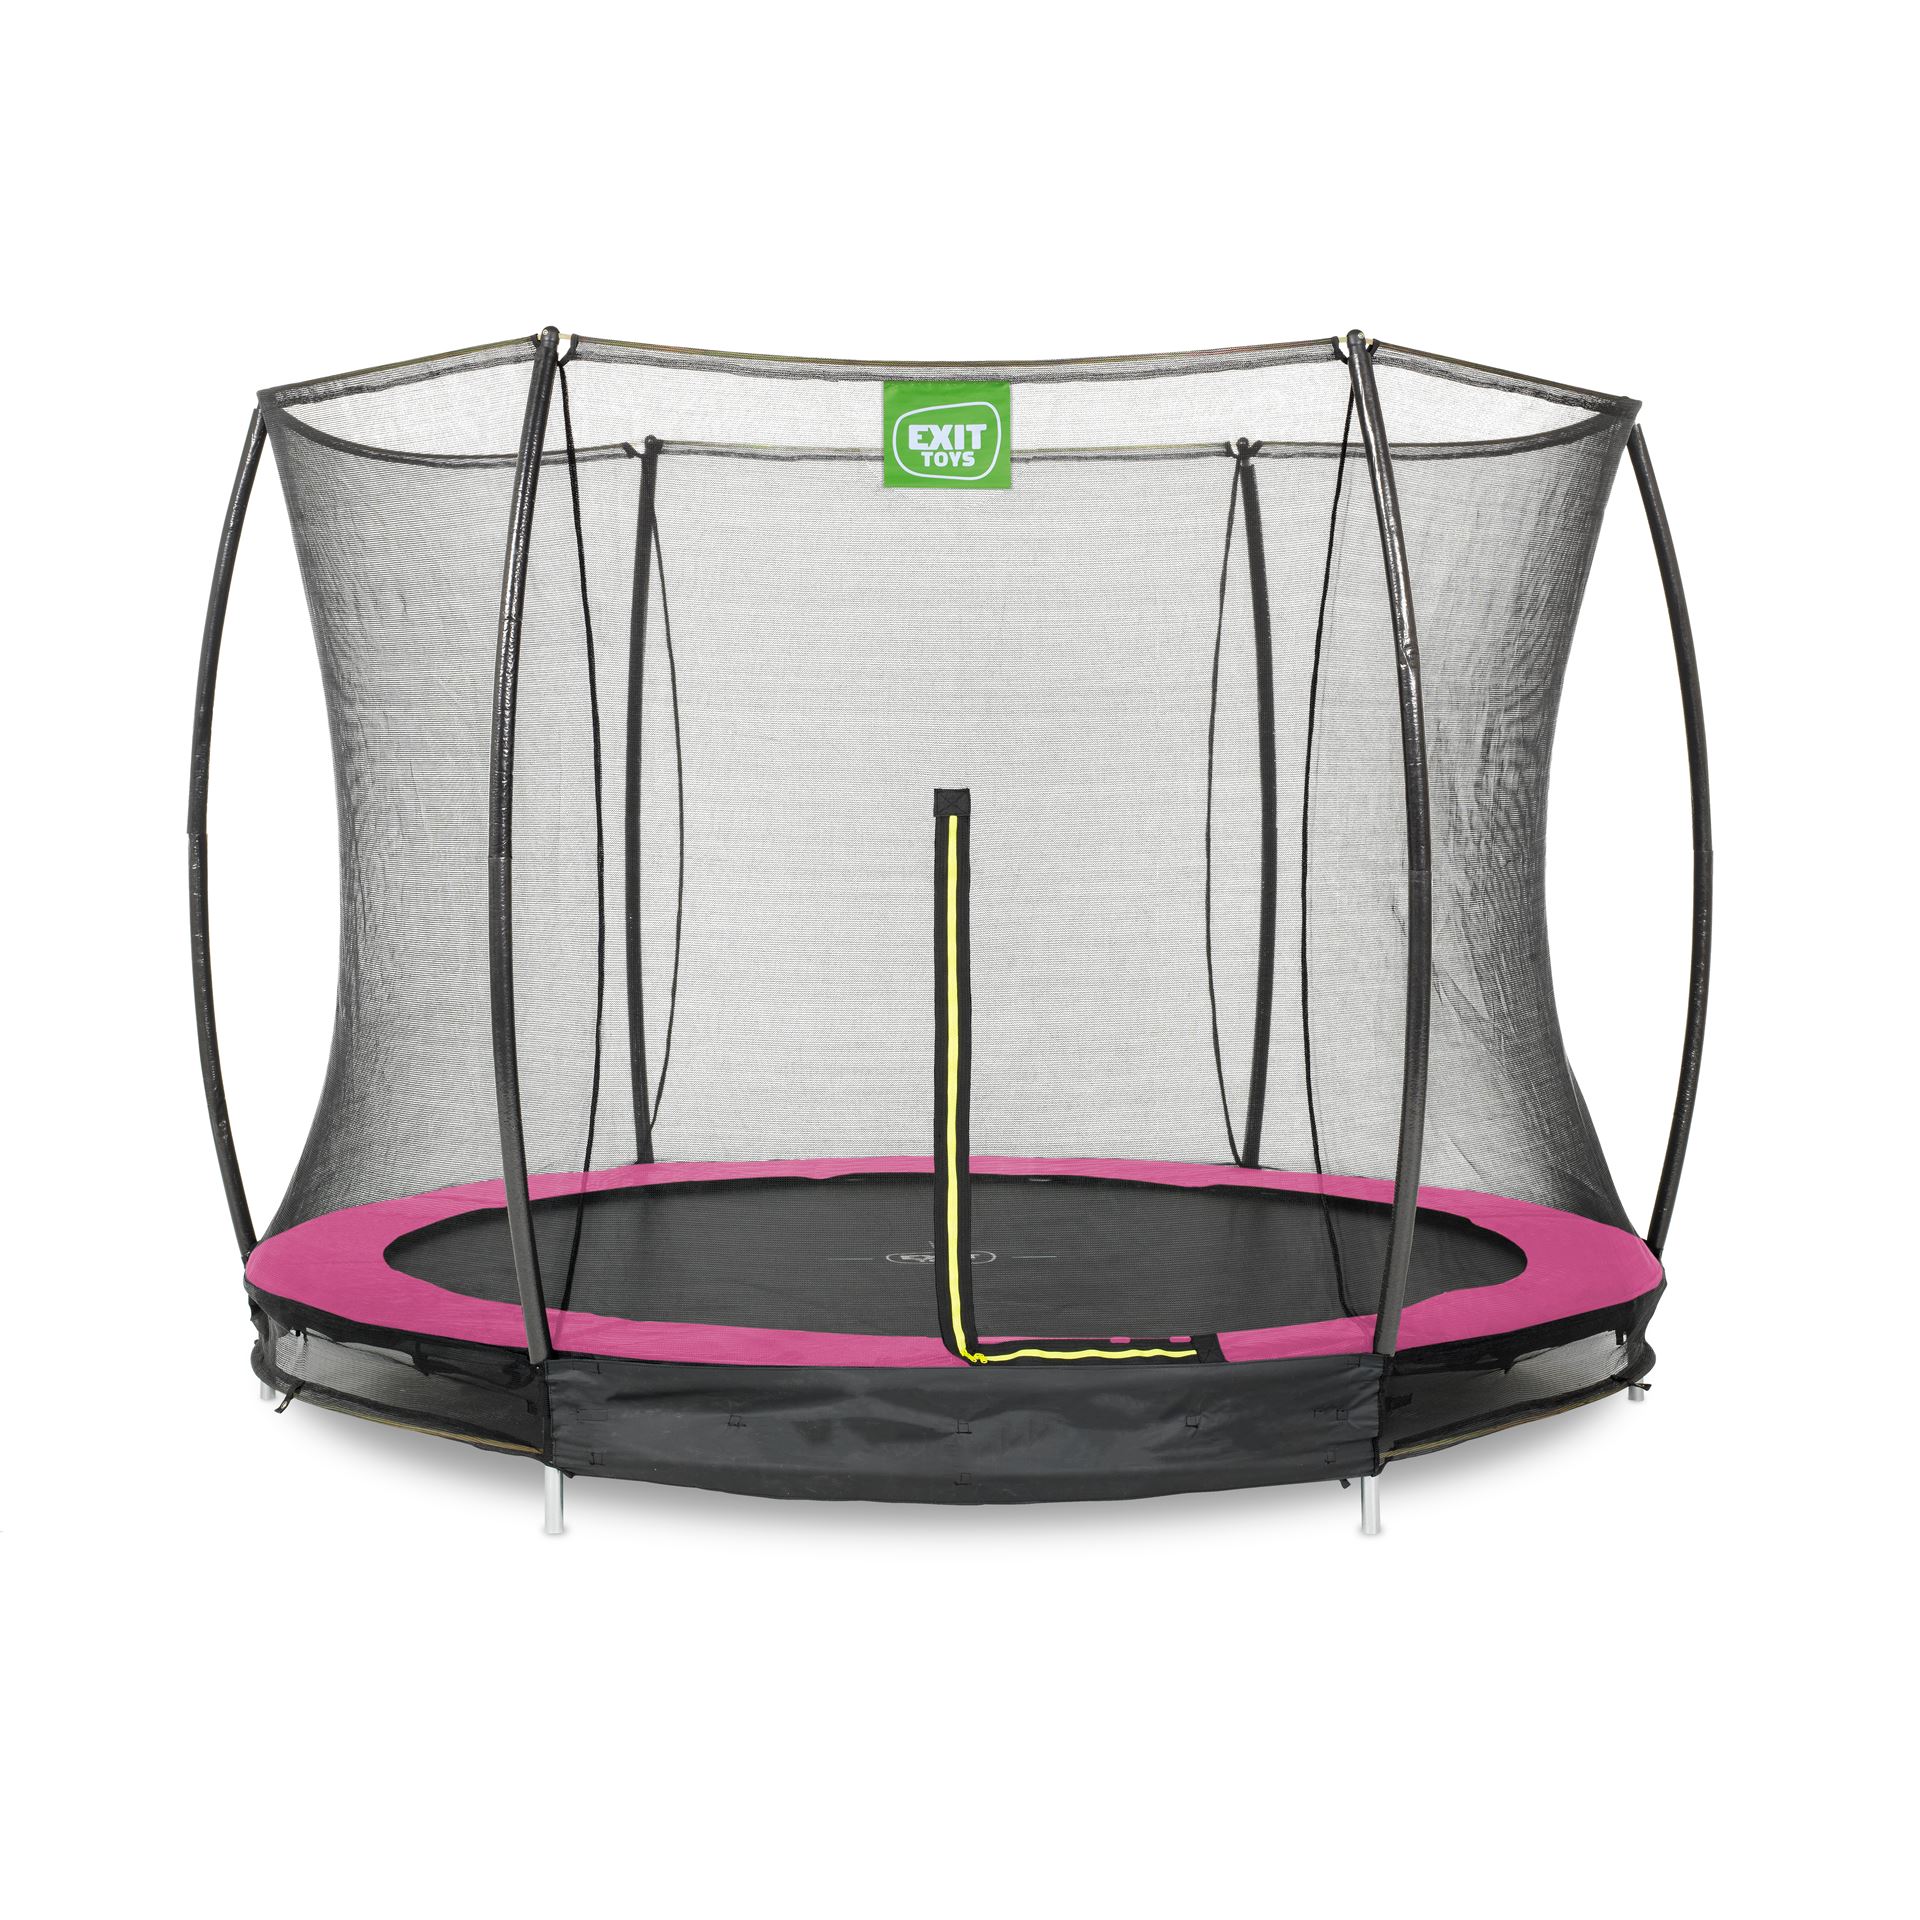 EXIT-Silhouette-inground-trampoline-305cm-met-veiligheidsnet-roze